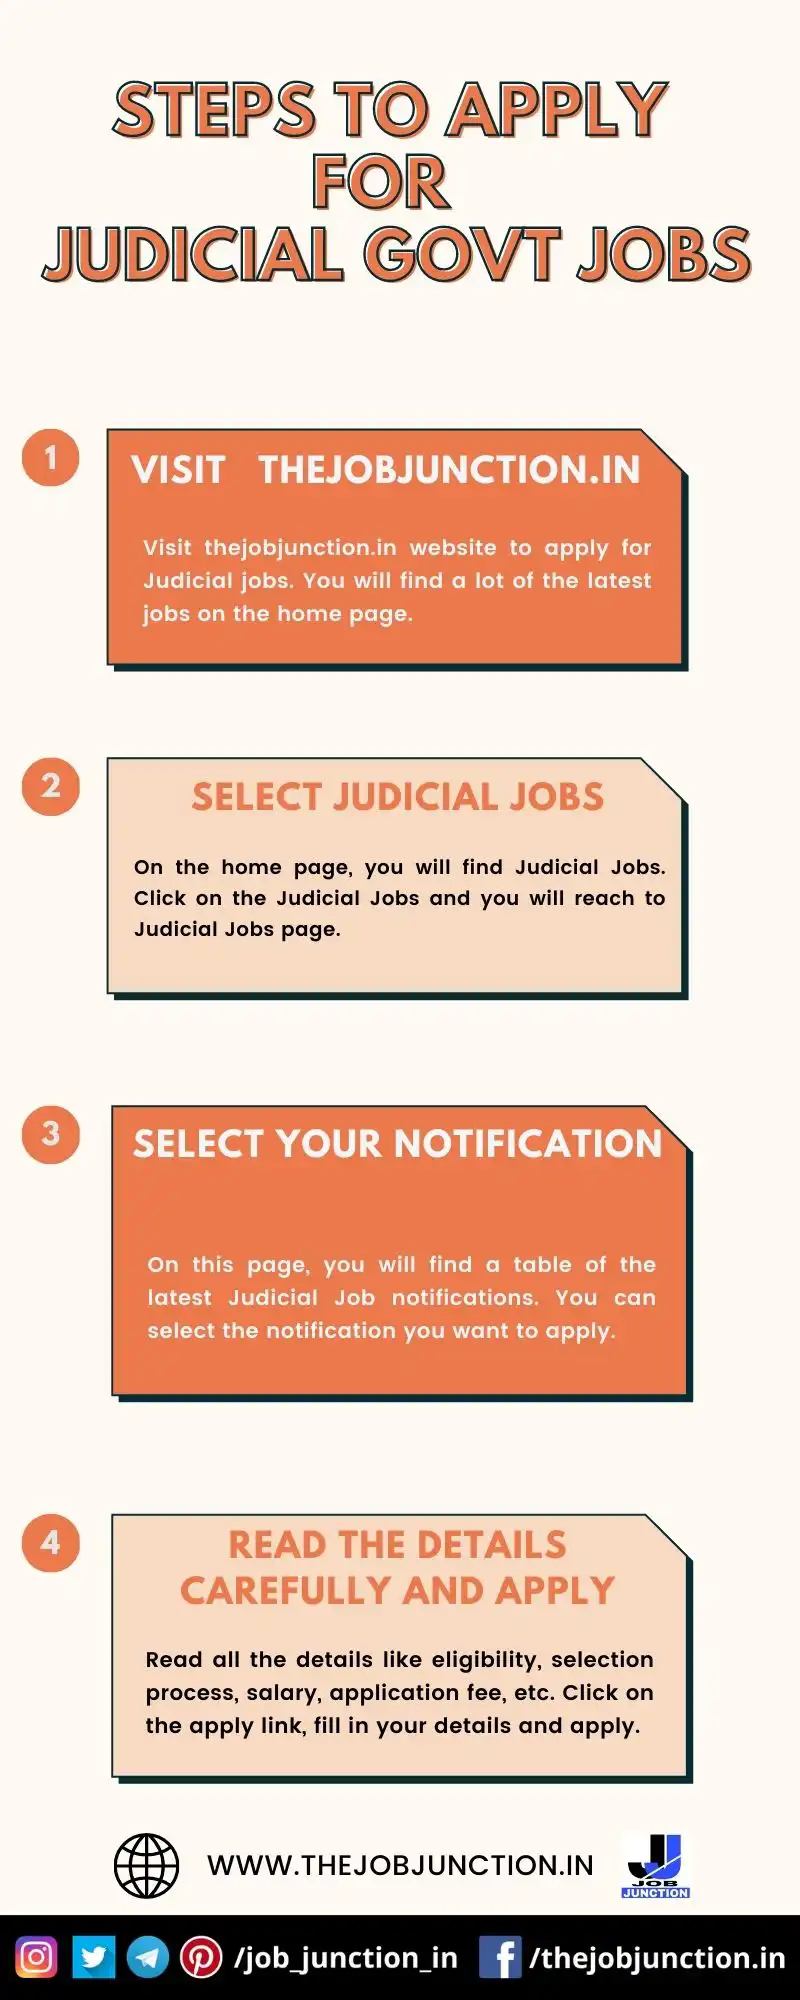 STEPS TO APPLY FOR JUDICIAL GOVT JOBS